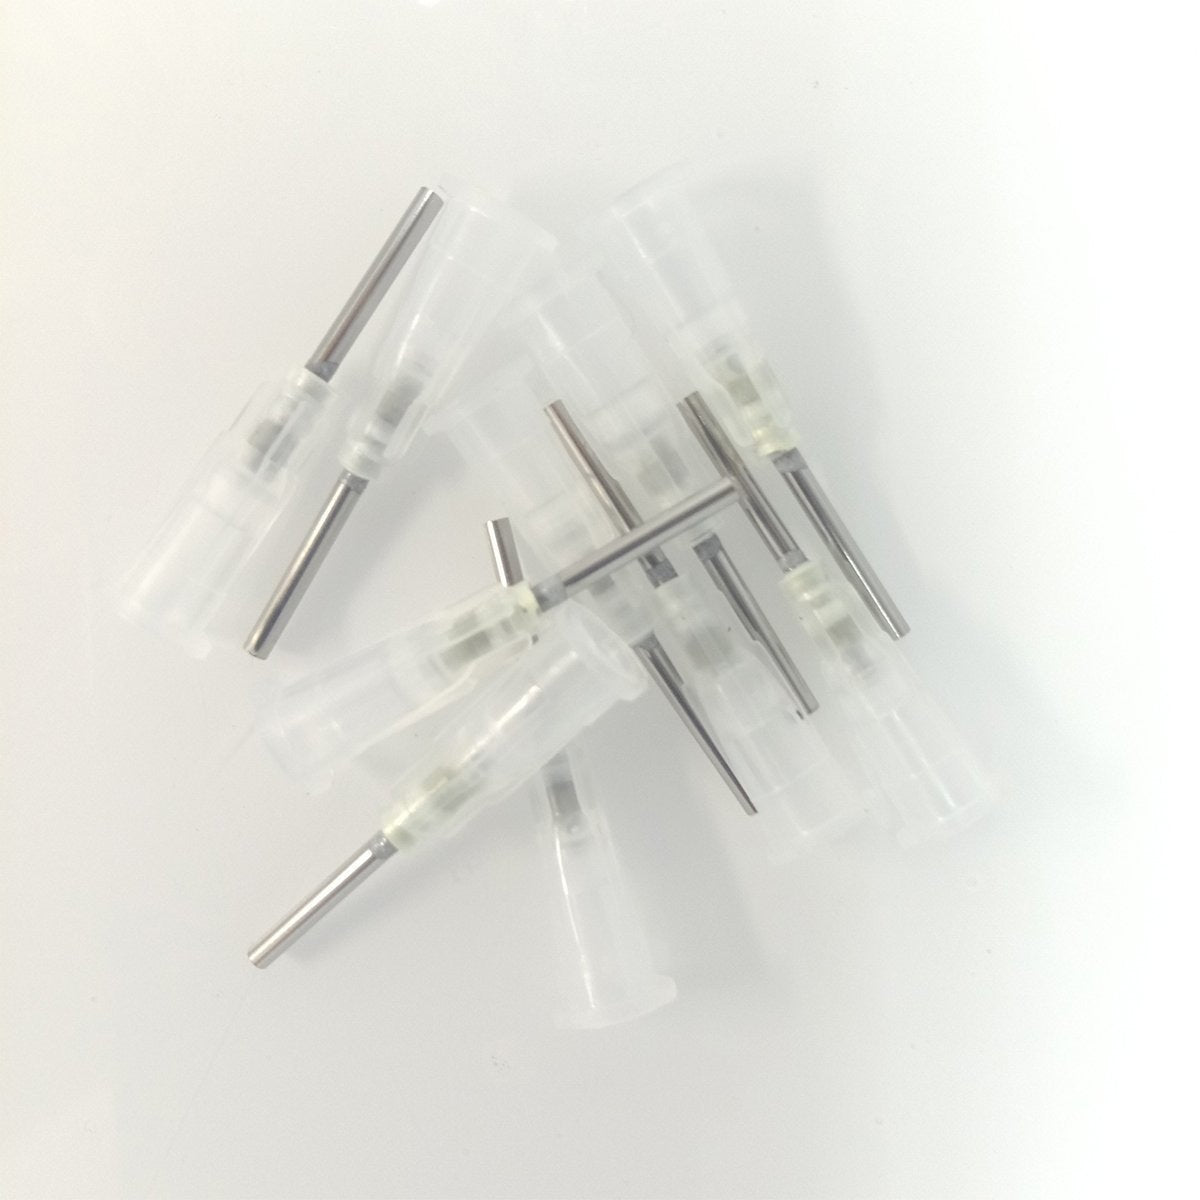 10x 14G 15G 16G 18G 19G 20G 21G 23G 25G 27G Dispensing Needle Tips S/S Glue Dispenser Needles 0.5" Tubing Length - 16G - - Asia Sell